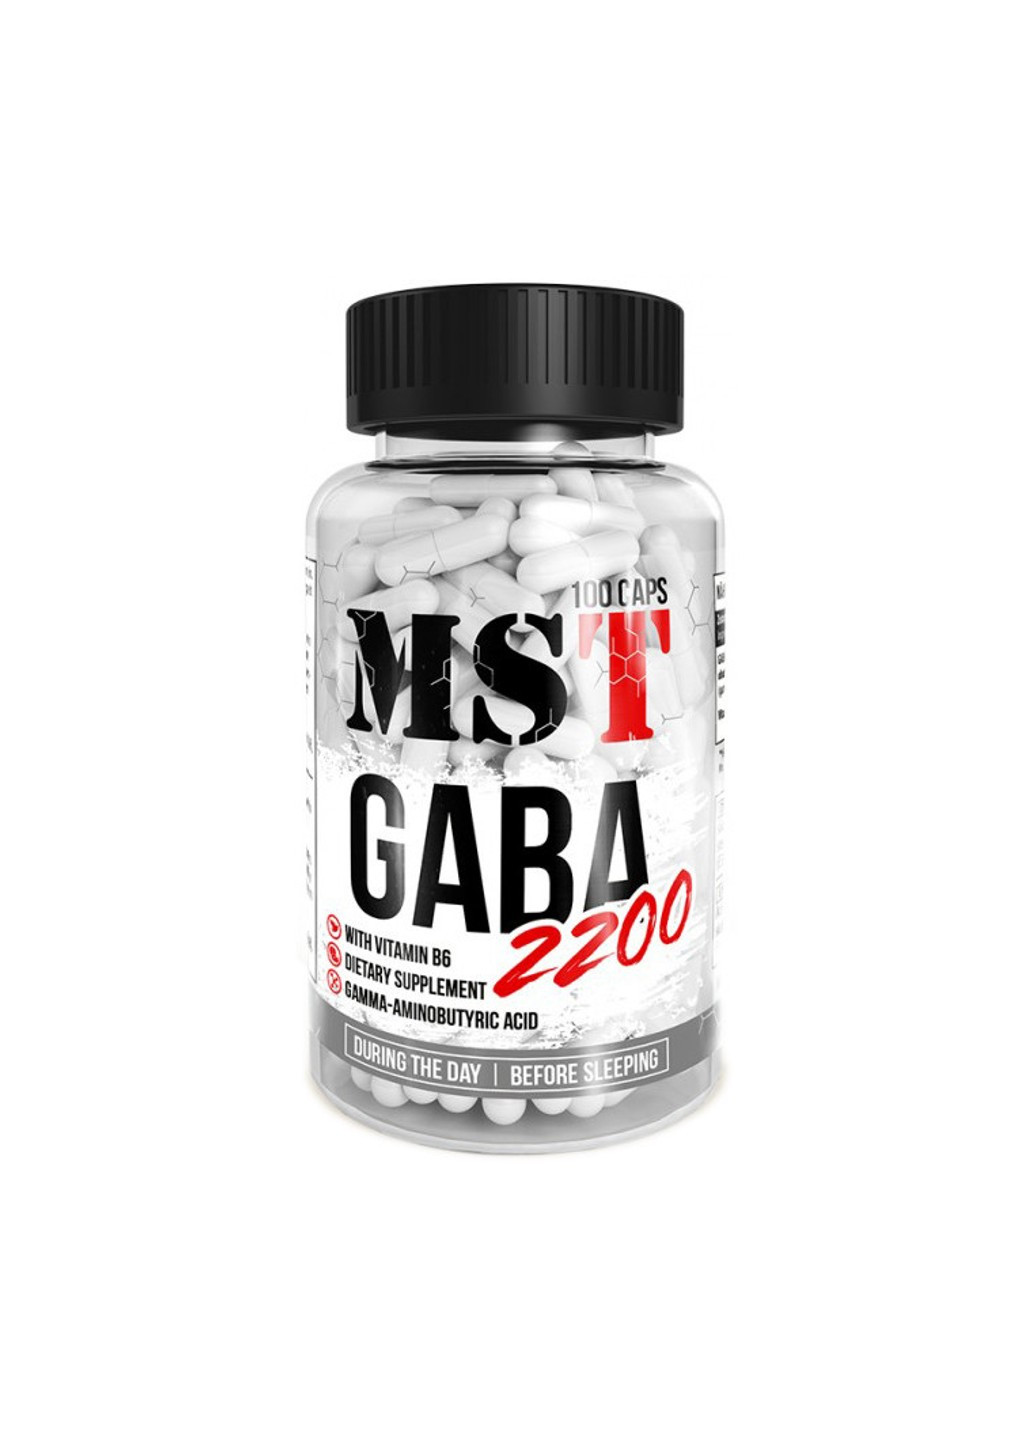 ГАМК GABA 2200 550 мг (100 капсул) мст гамма-аминомасляная кислота MST (255363356)